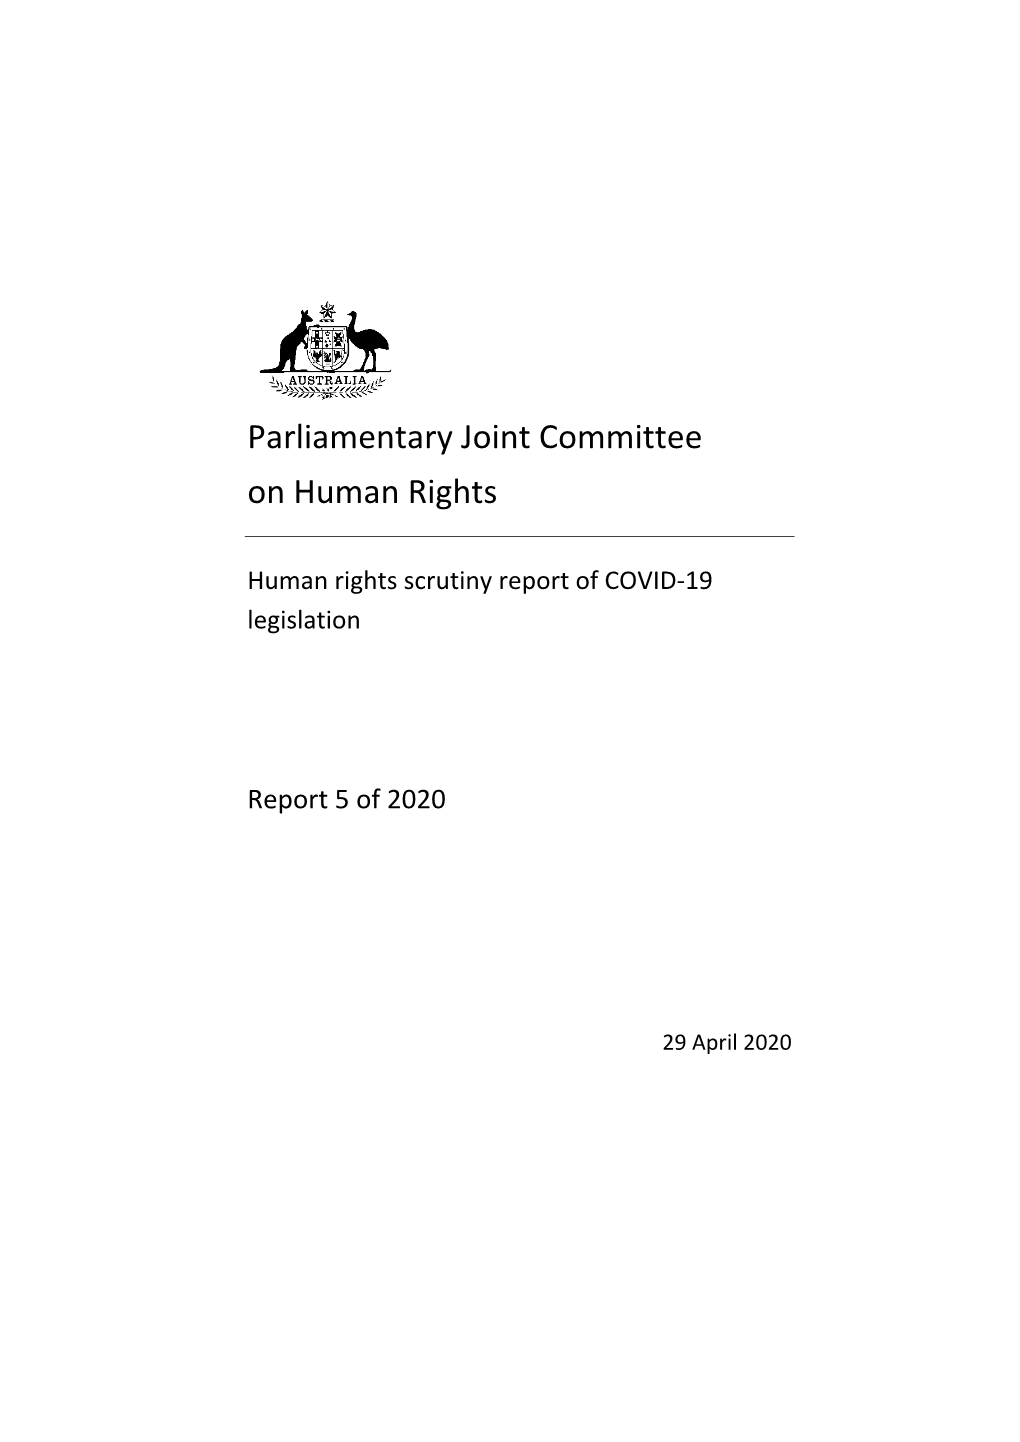 Human Rights Scrutiny of COVID-19 Legislation; [2020] AUPJCHR 63